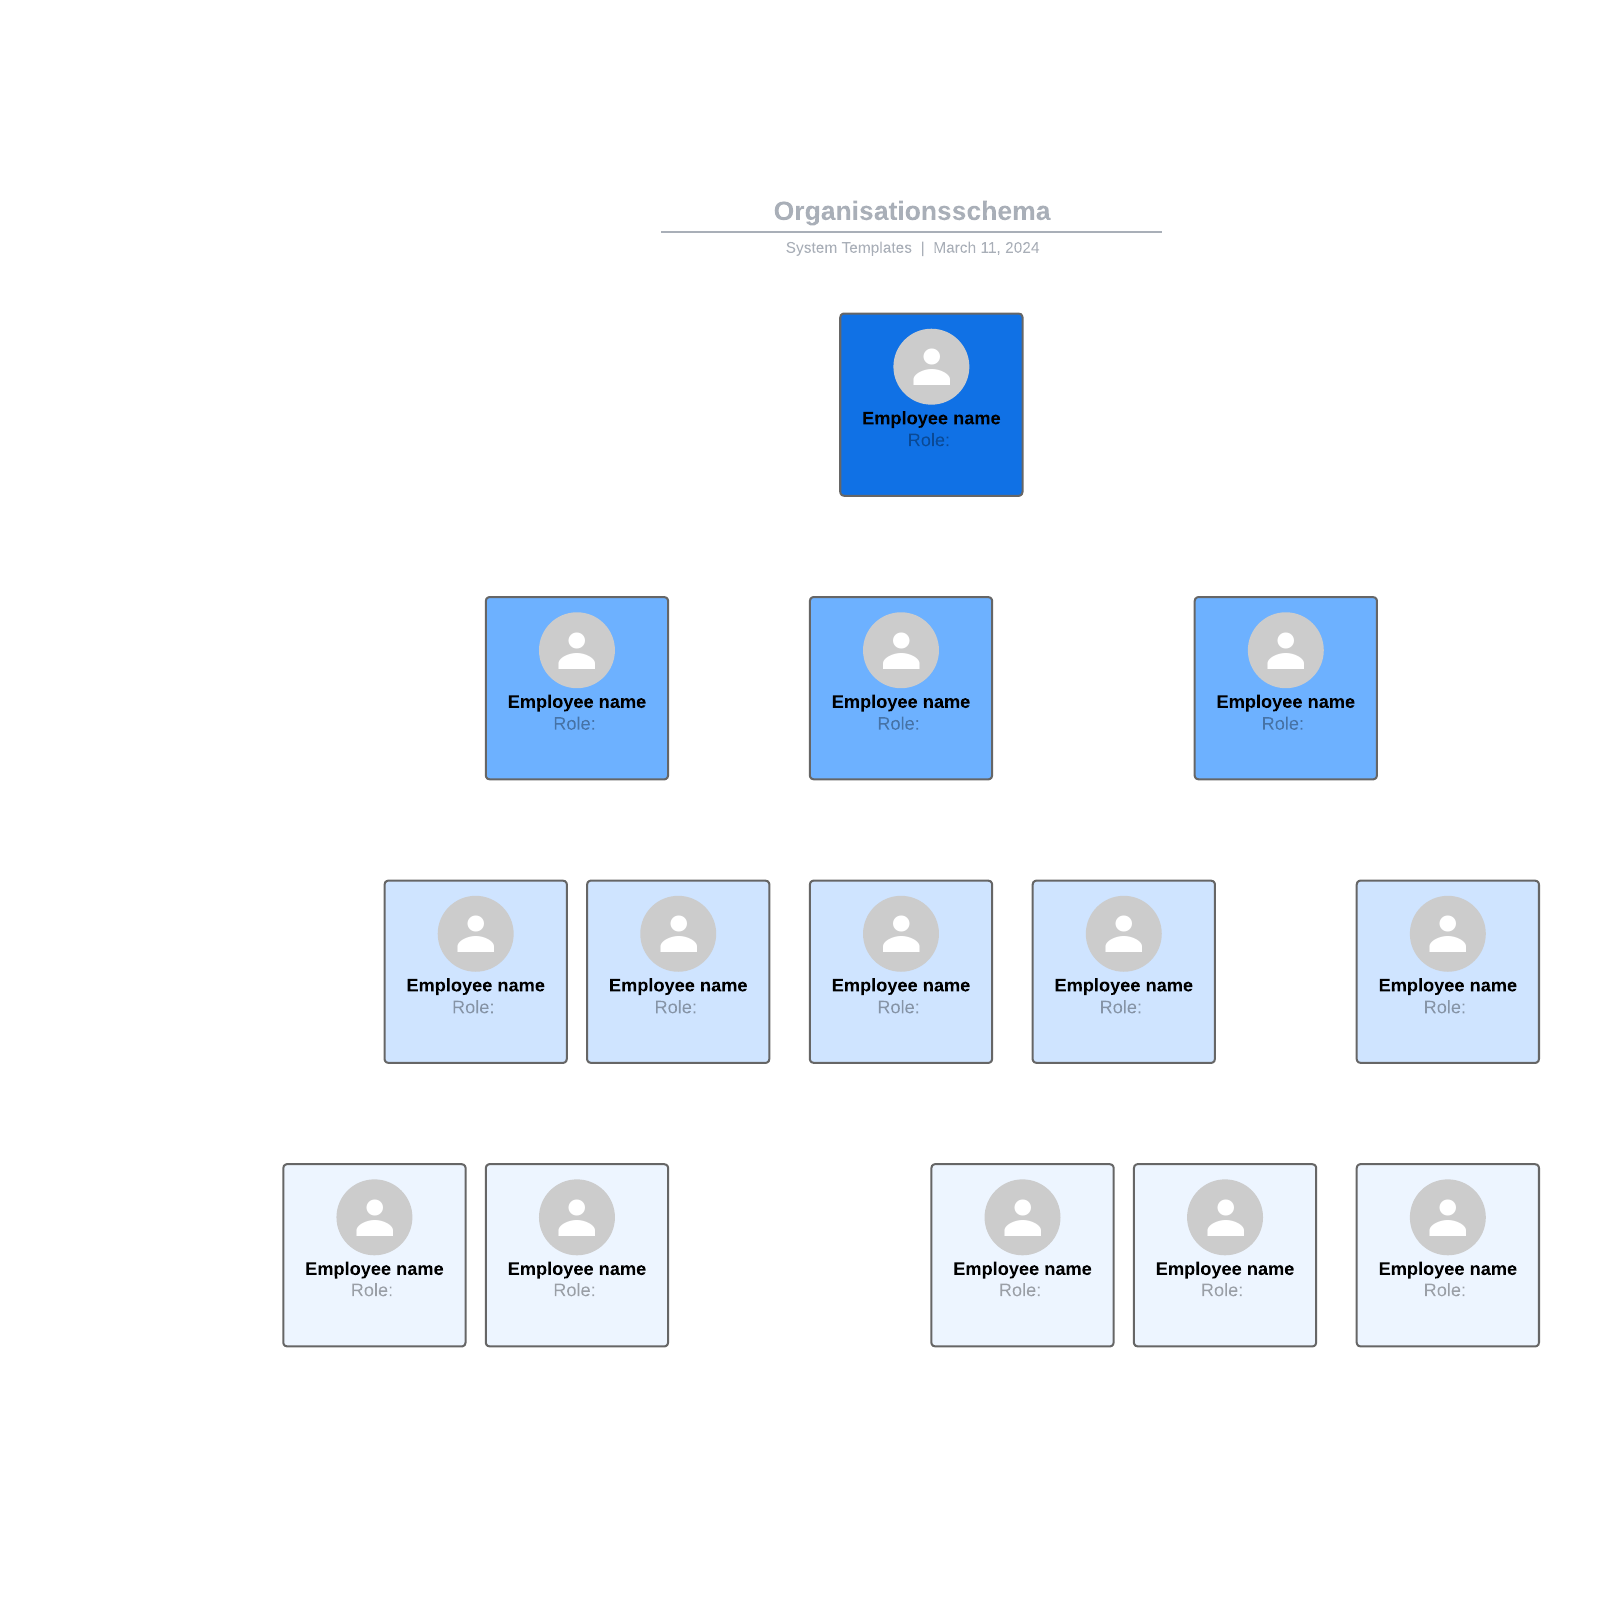 Organisationsschema example